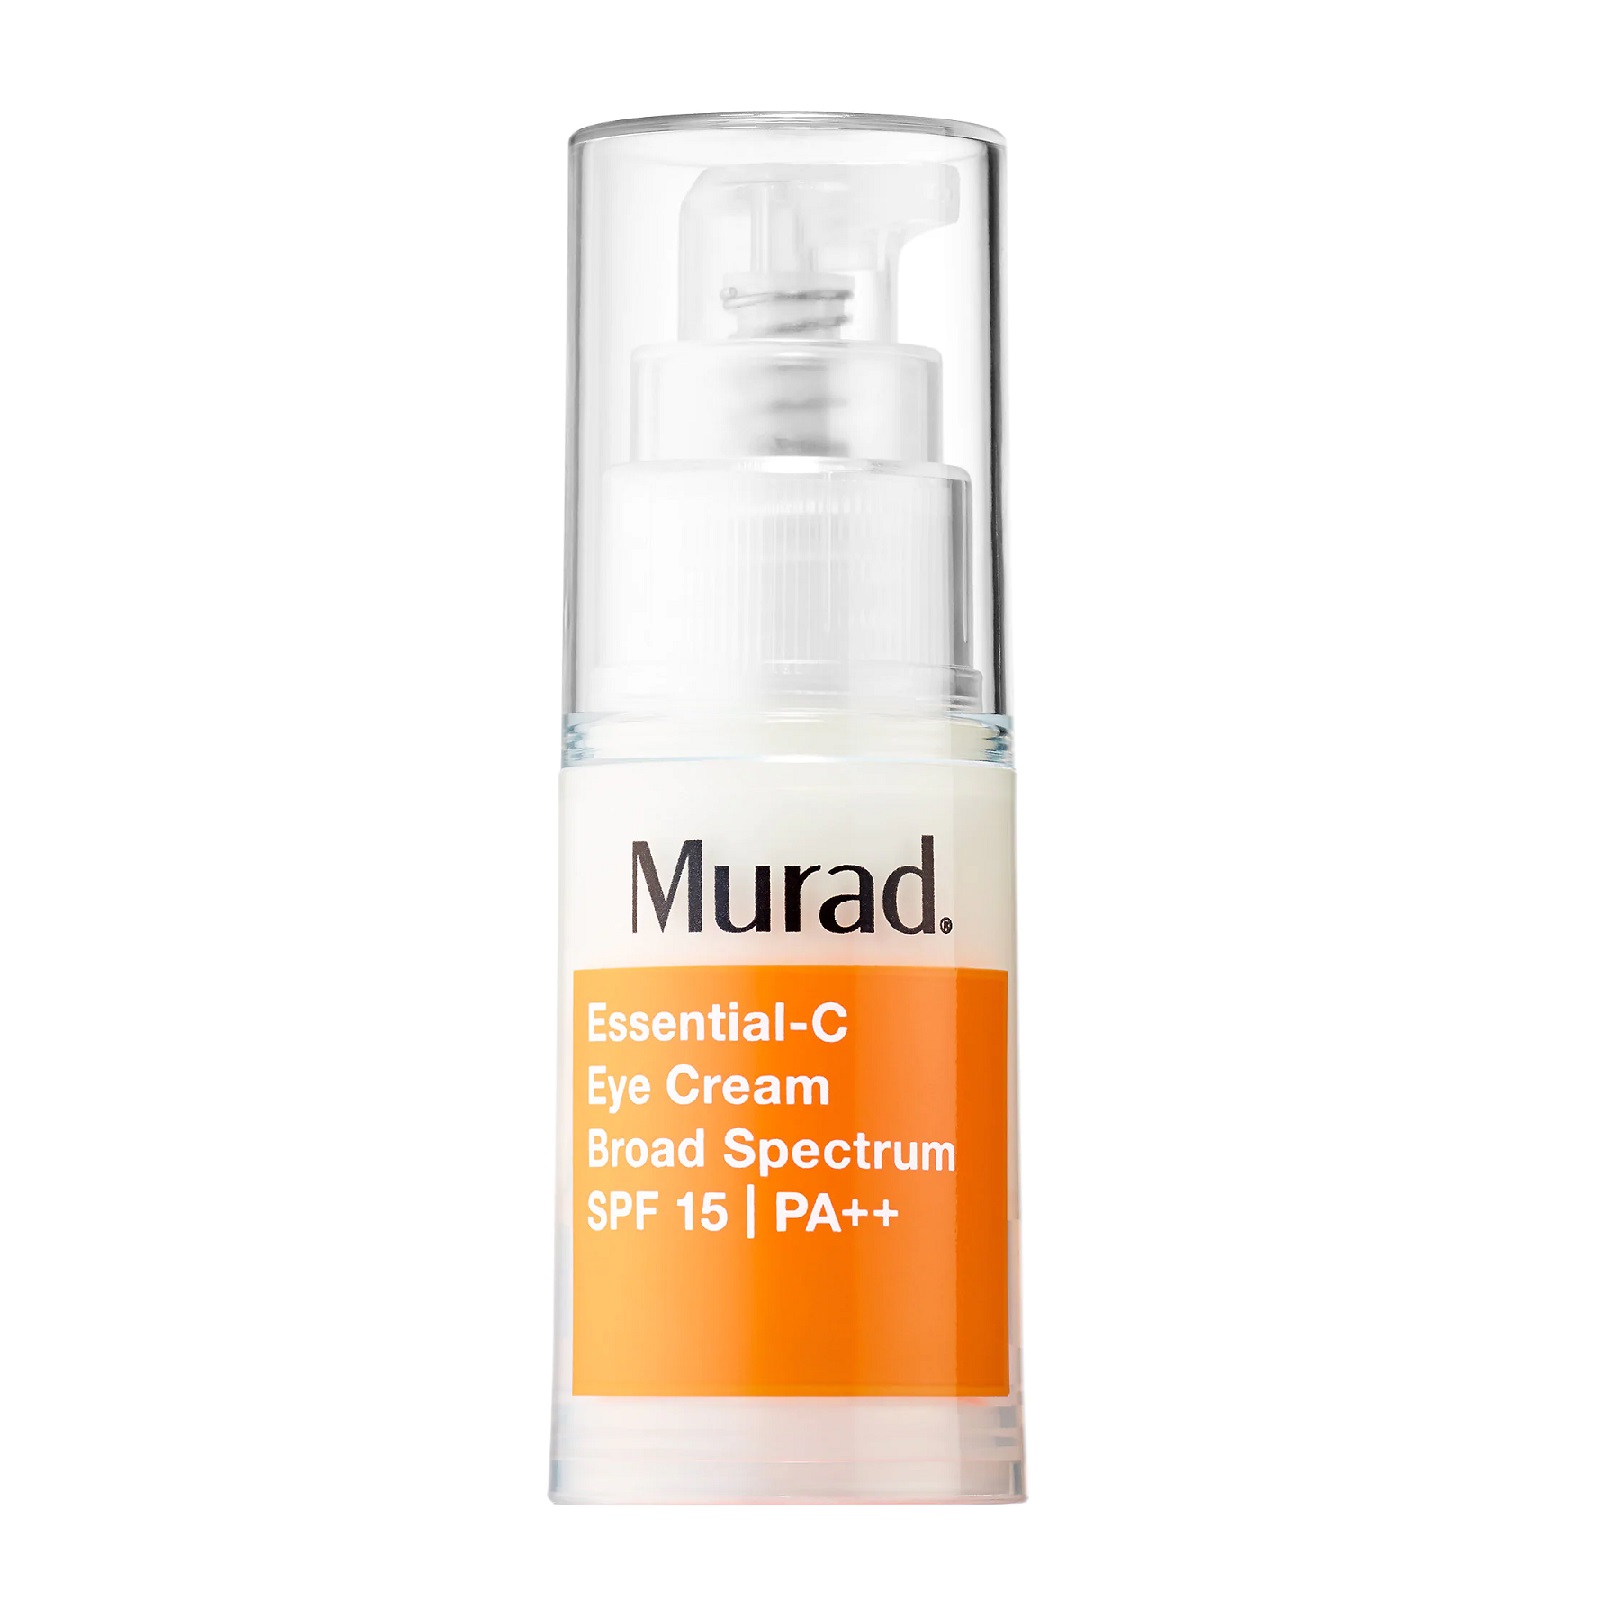 MURAD Essential-C Eye Cream SPF 15 